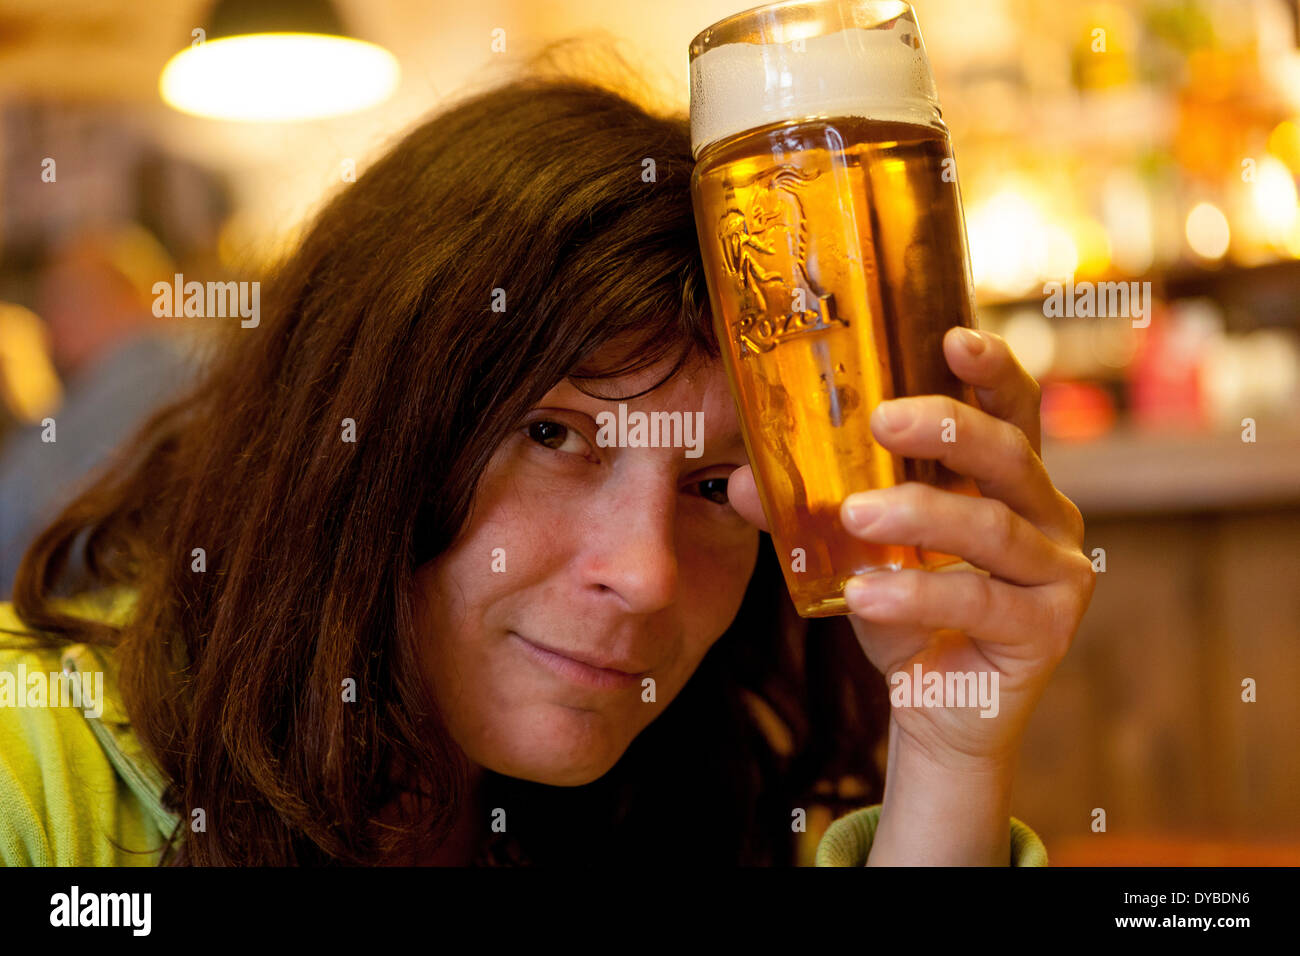 Woman with Czech beer glass Cold beer, Prague bar 'U Zavesenyho kafe' Prague Czech Republic Stock Photo